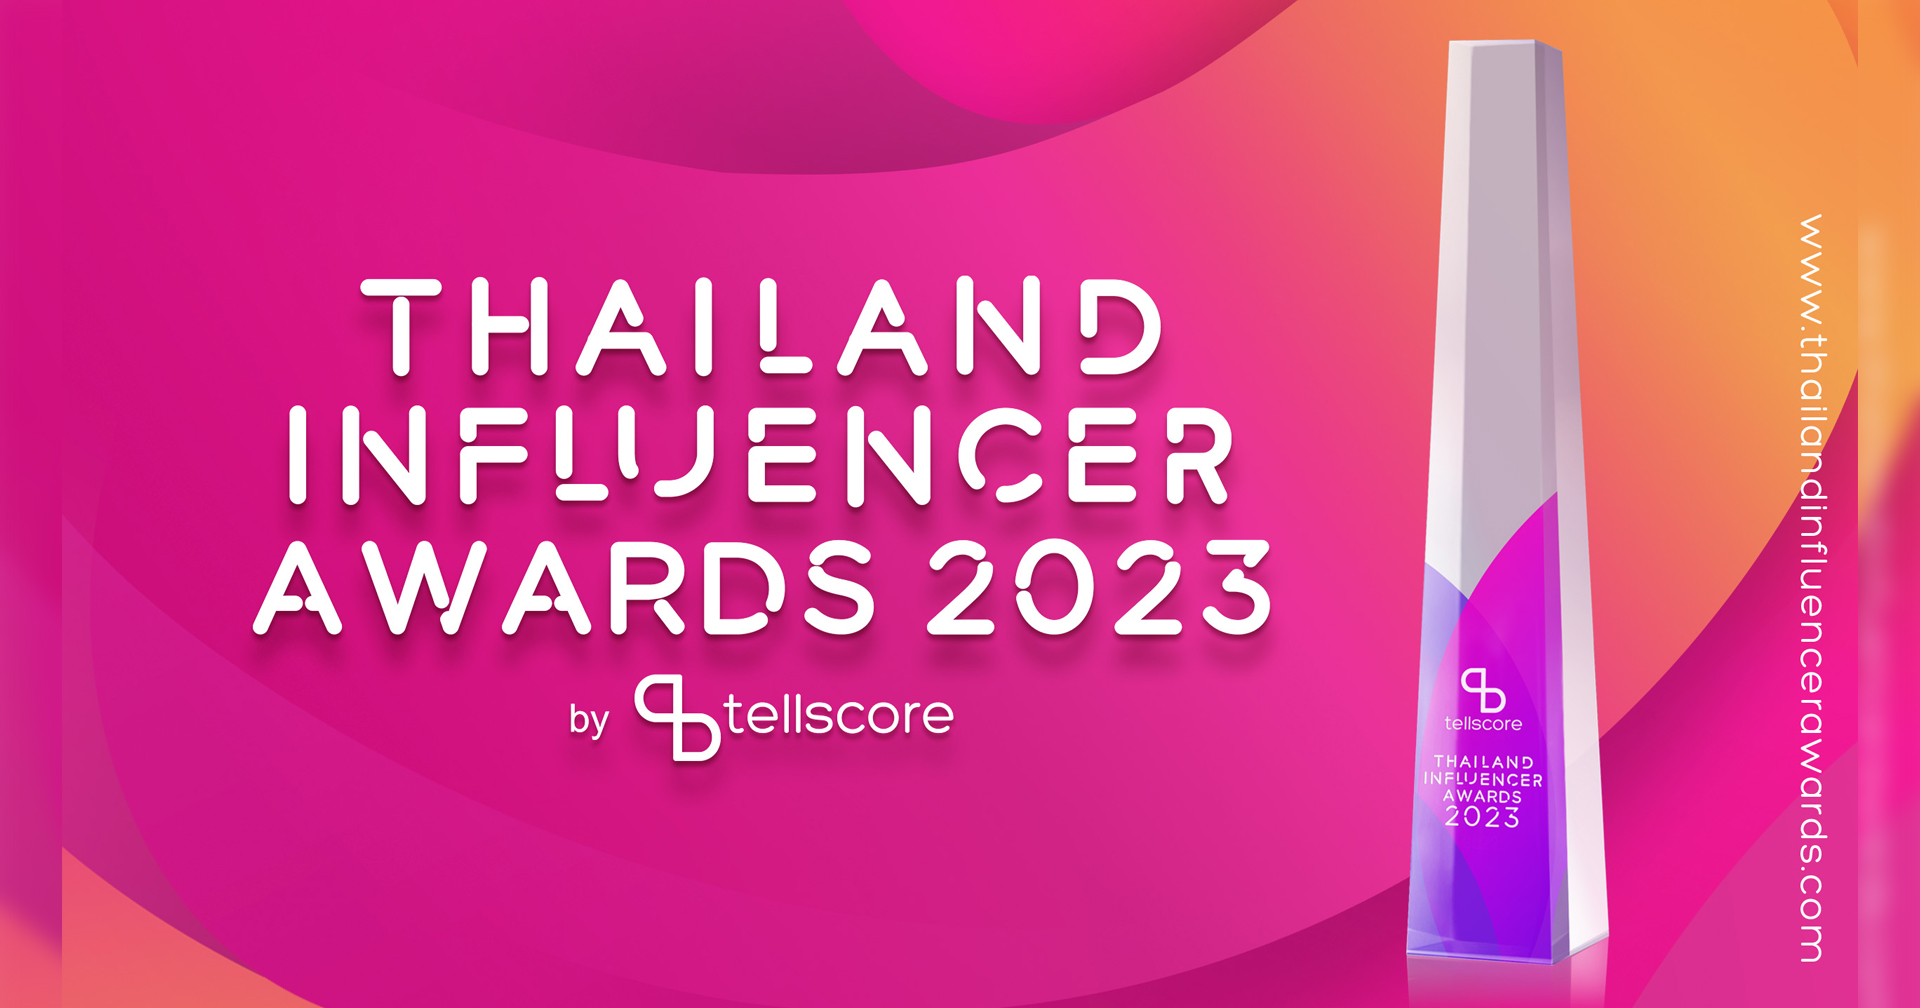 เตรียมพบกับงาน Thailand Influencer Awards 2023 งานประกาศรางวัลอินฟลูเอนเซอร์แห่งปี